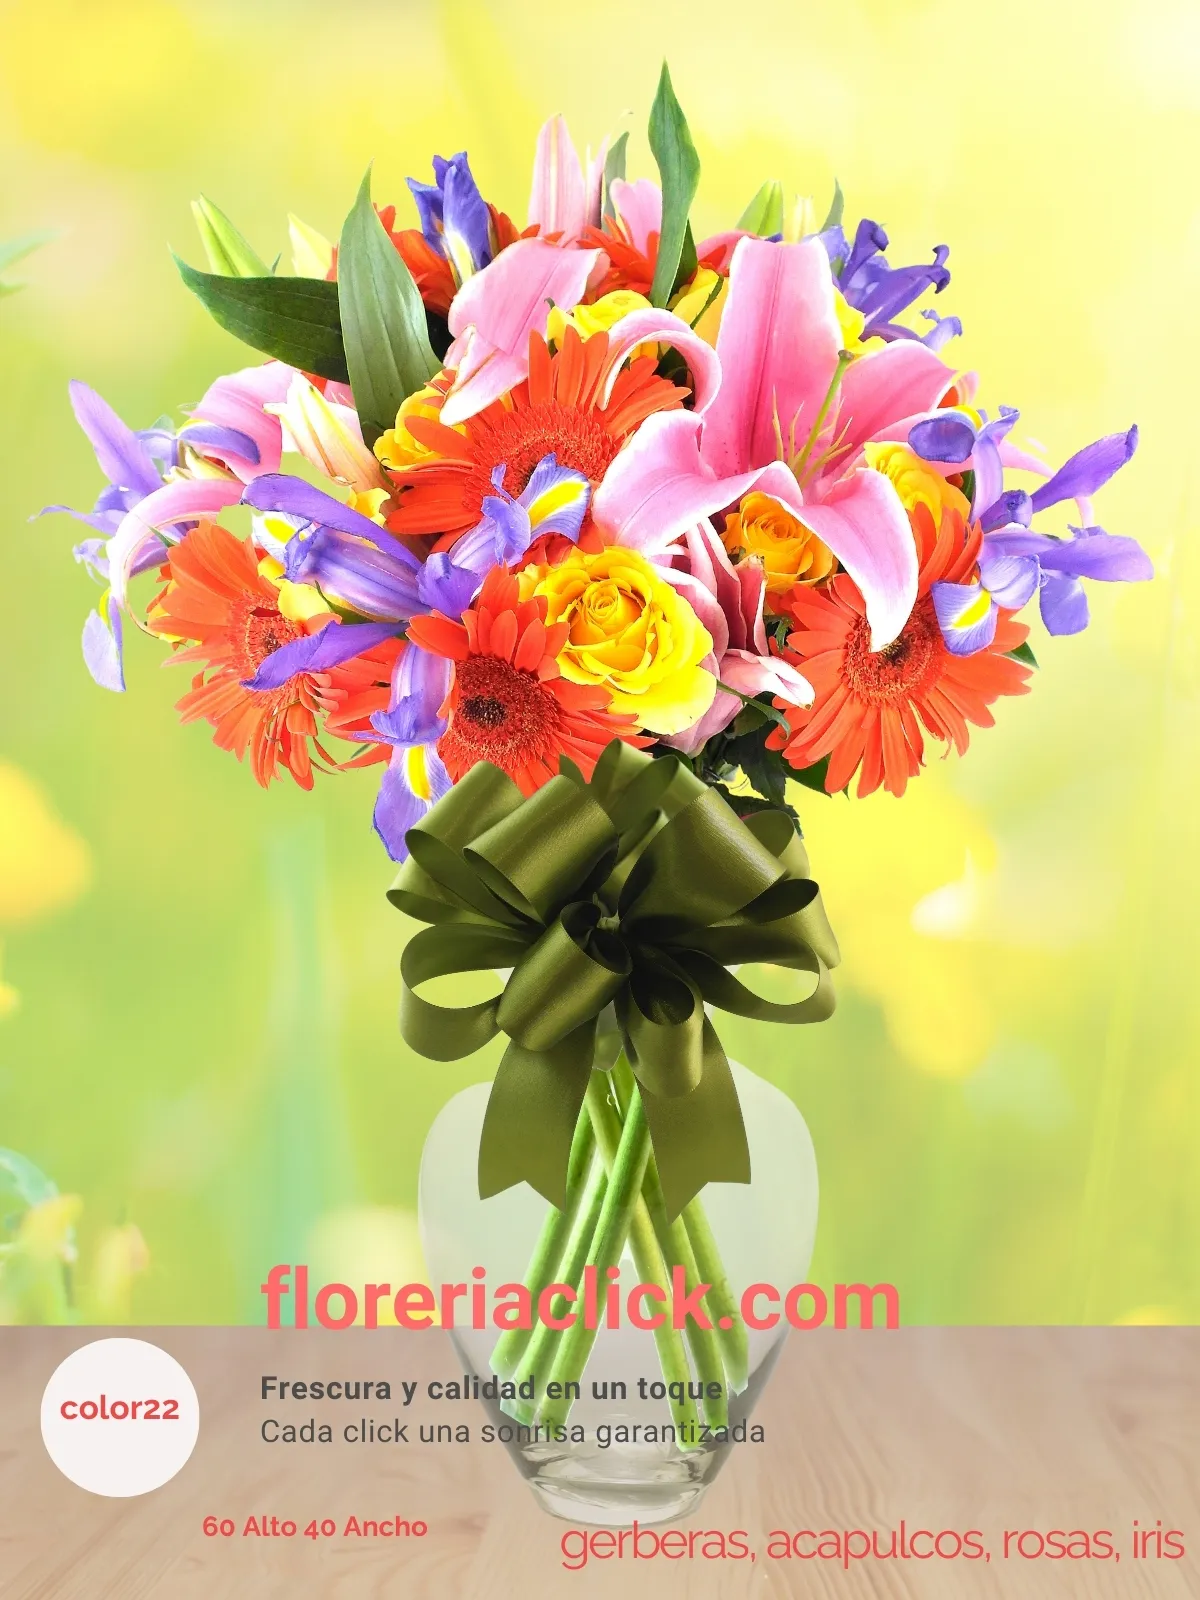 Arreglo floral moderno con acapulcos y gerberas en tonos vibrantes